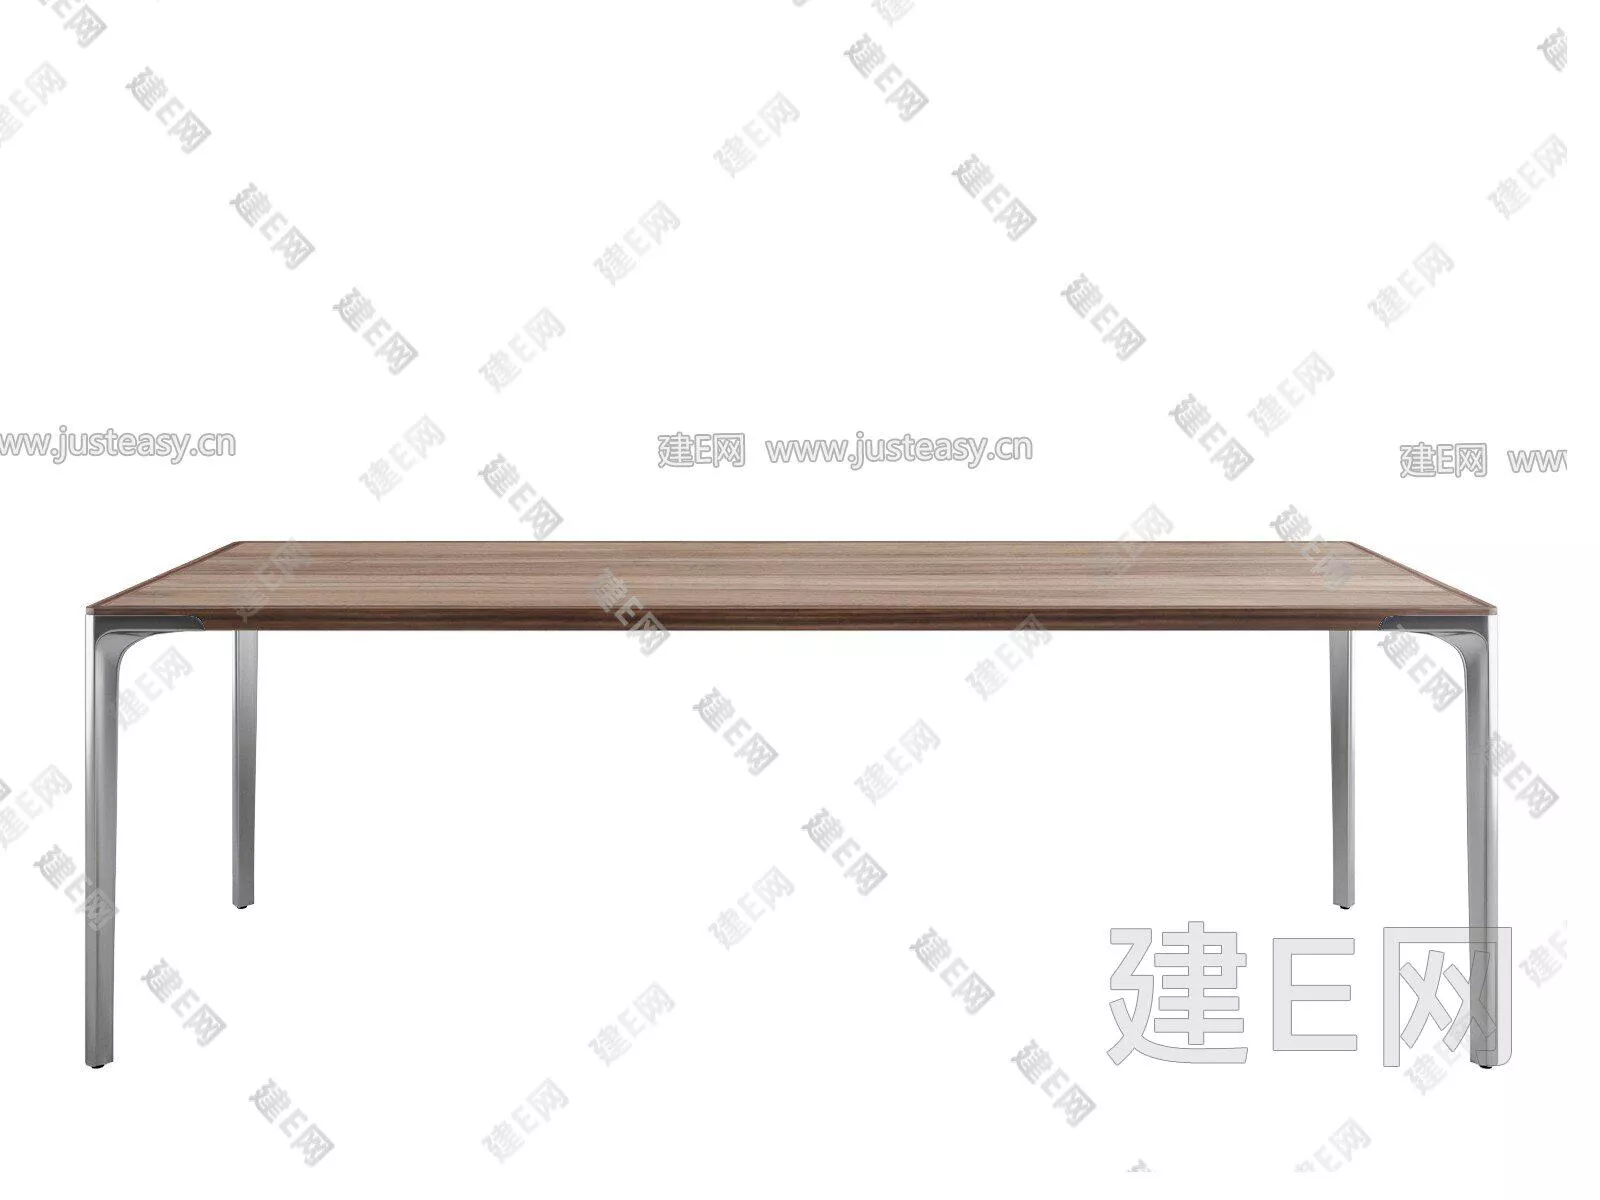 MODERN DINING TABLE SET - SKETCHUP 3D MODEL - ENSCAPE - 111234364